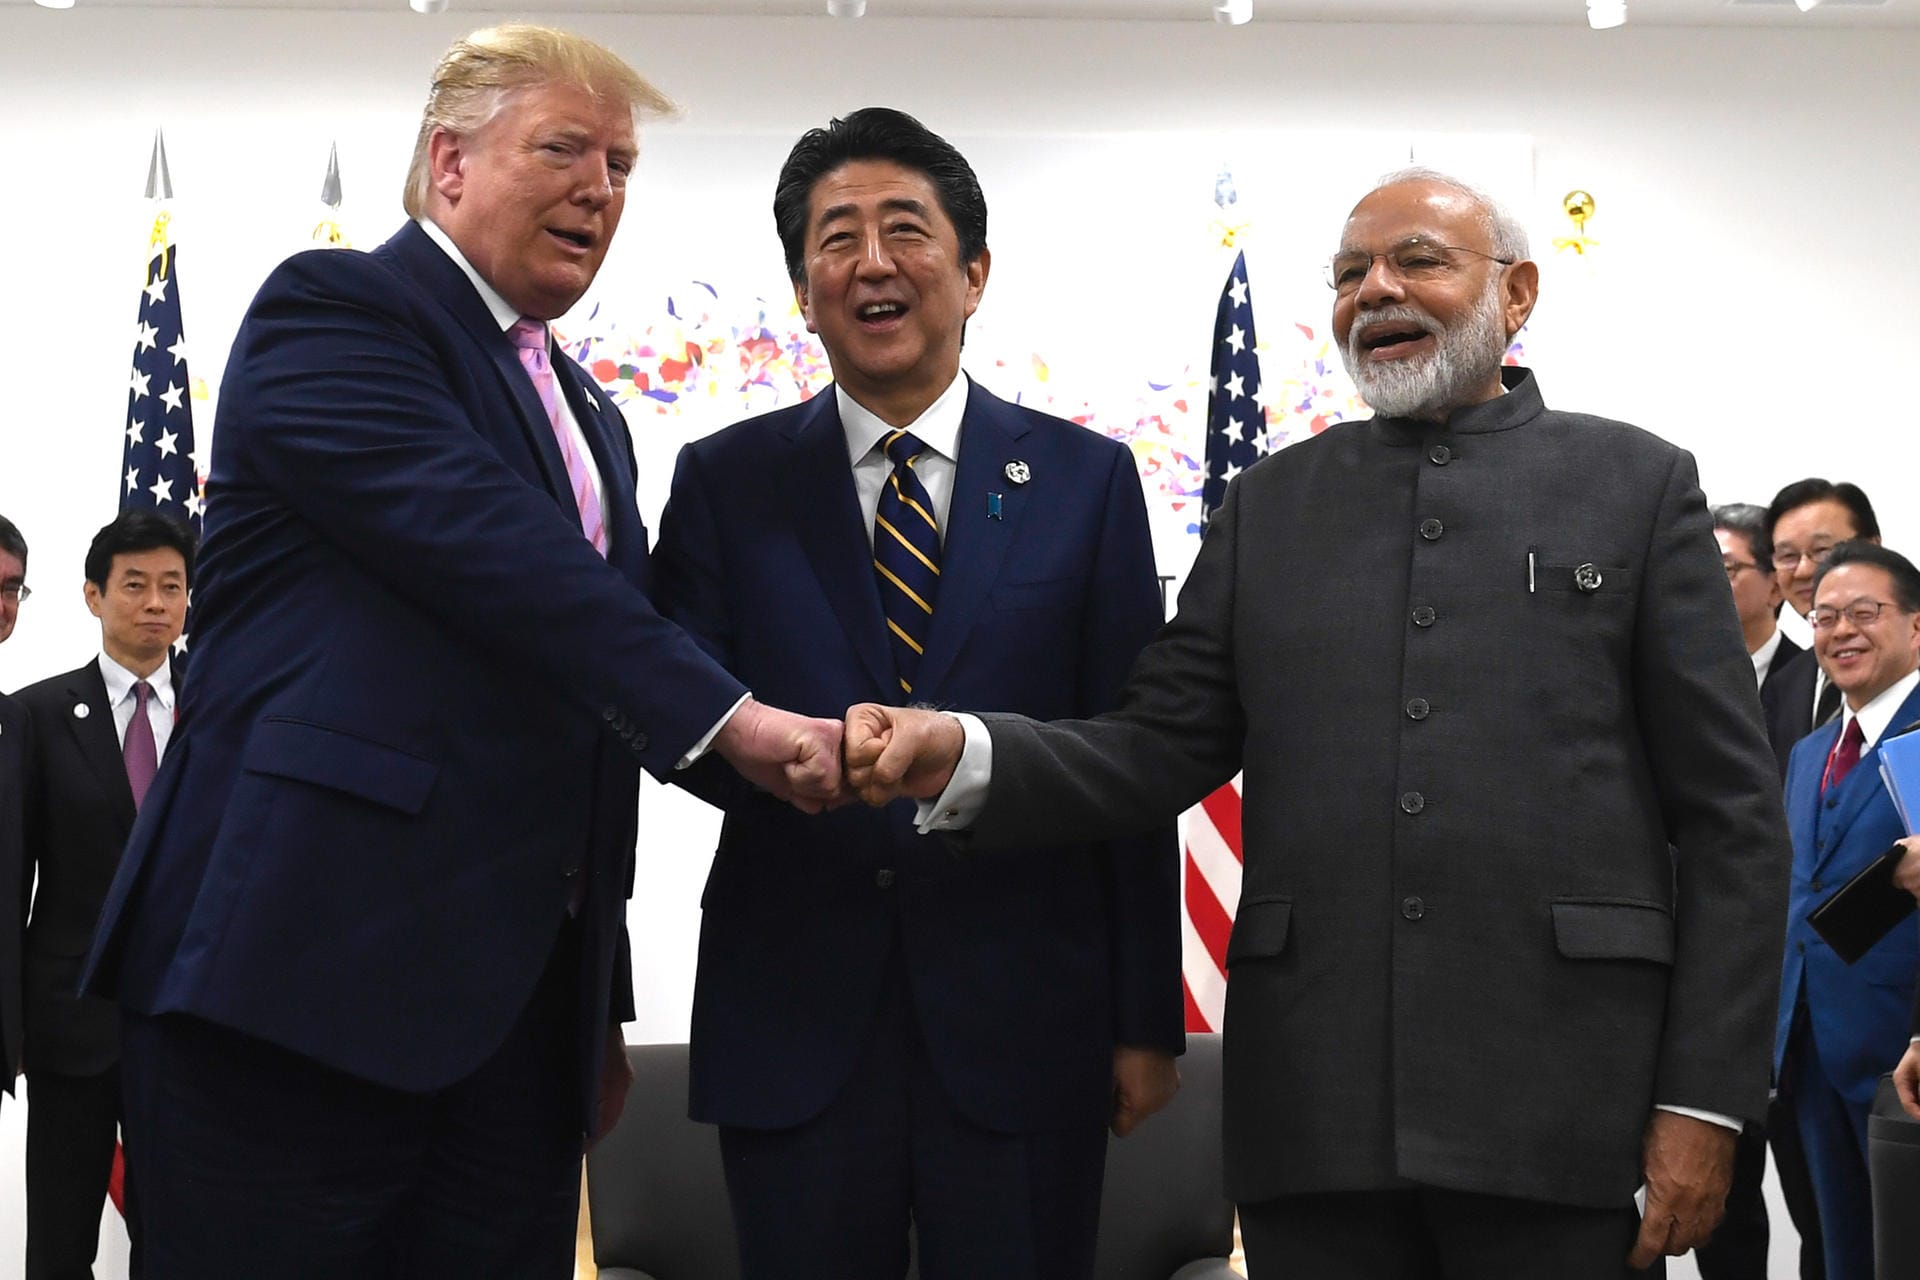 Wer schüttelt wem die Hand, wem zuerst und wie lange? US-Präsident Donald Trump macht da nicht mit. Beim Dreier-Treffen mit Gipfel-Gastgeber Shinzo Abe (Japan) und dem indischen Premierminister Narendra Modi stießen die Staatsmänner wie Sportler die Fäuste gegeneinander.